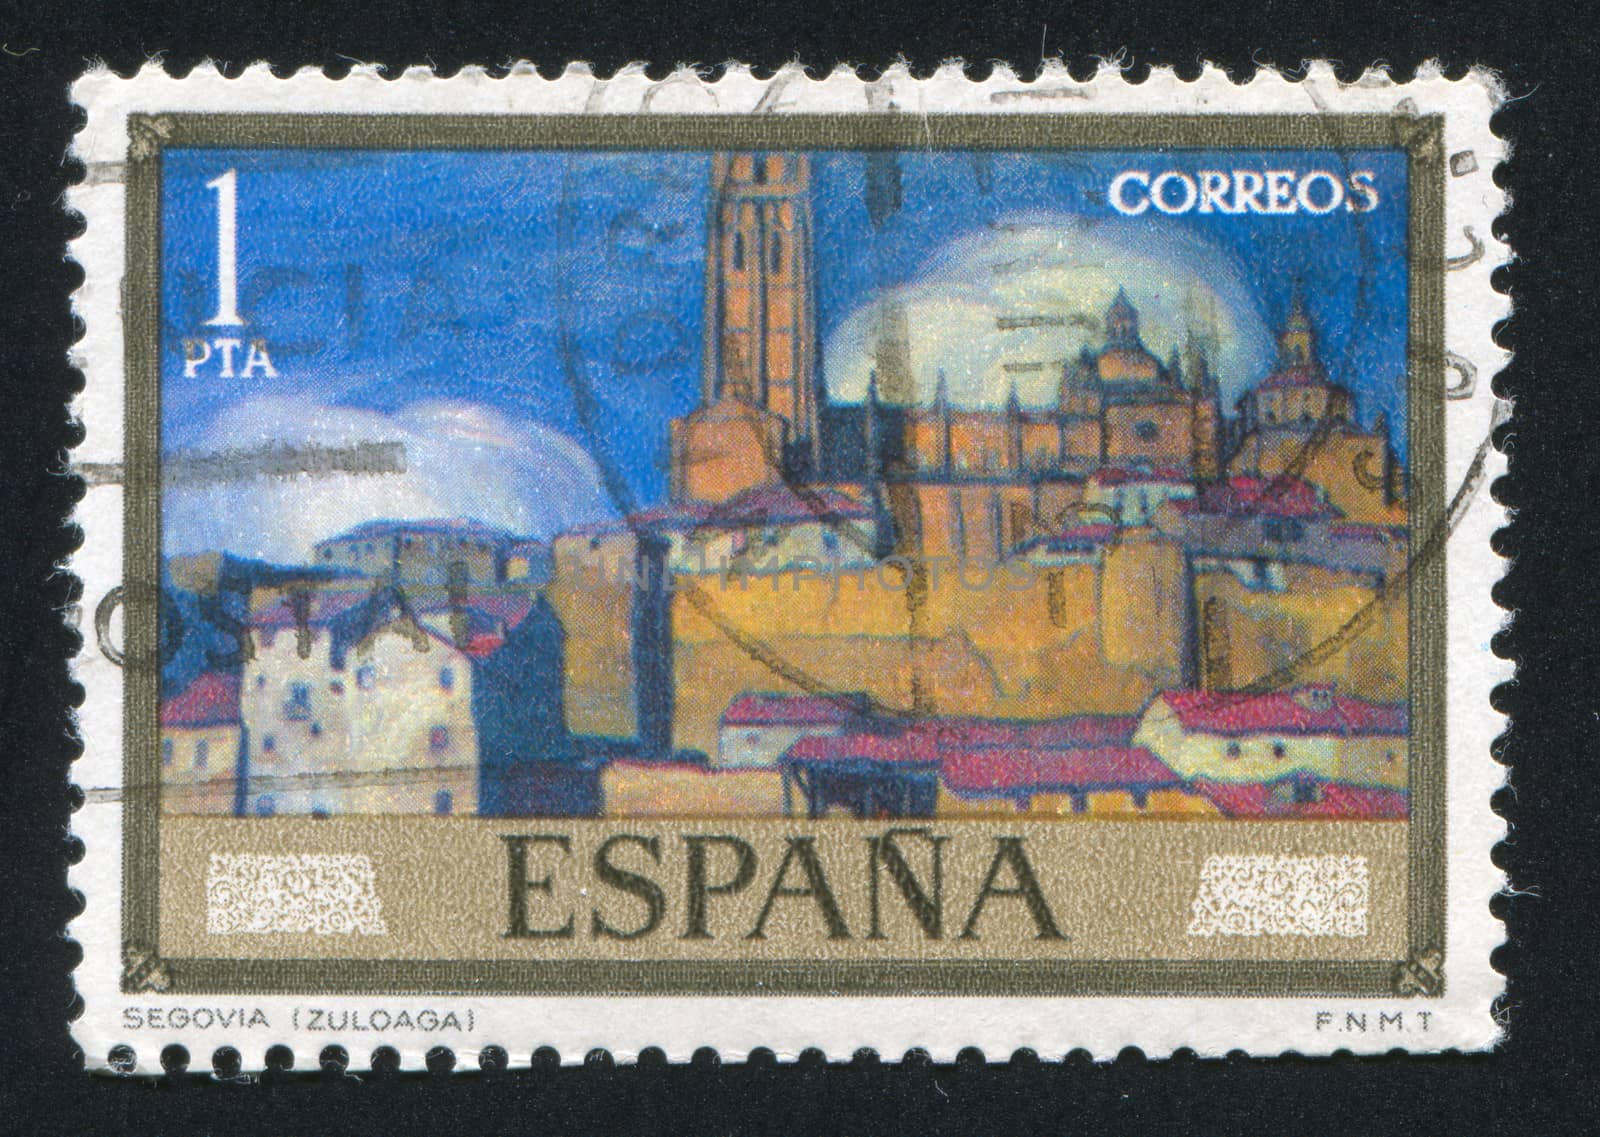 SPAIN - CIRCA 1971: stamp printed by Spain, shows Views of Segovia (Zuloaga), circa 1971